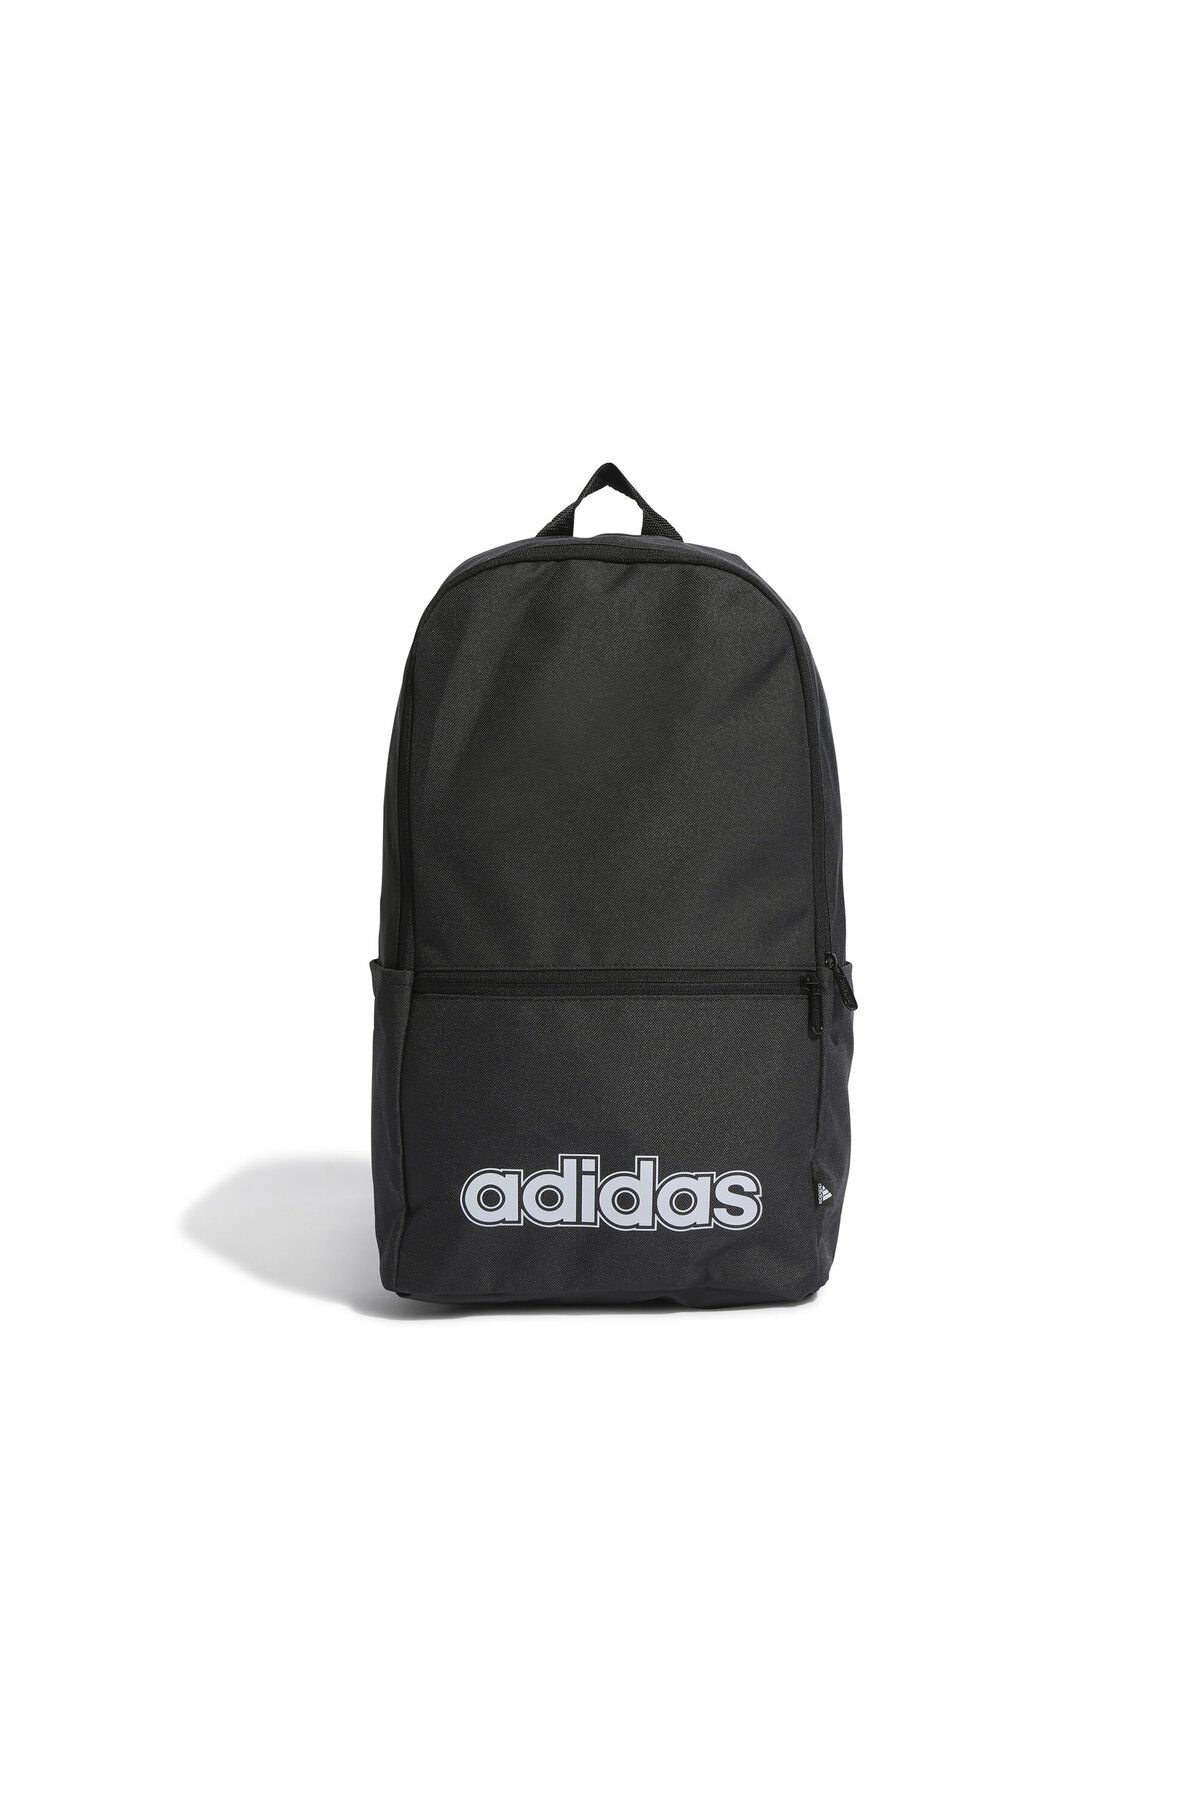 adidas Backpack Günlük Kullanıma Uygun Okul ve Sırt Çantası